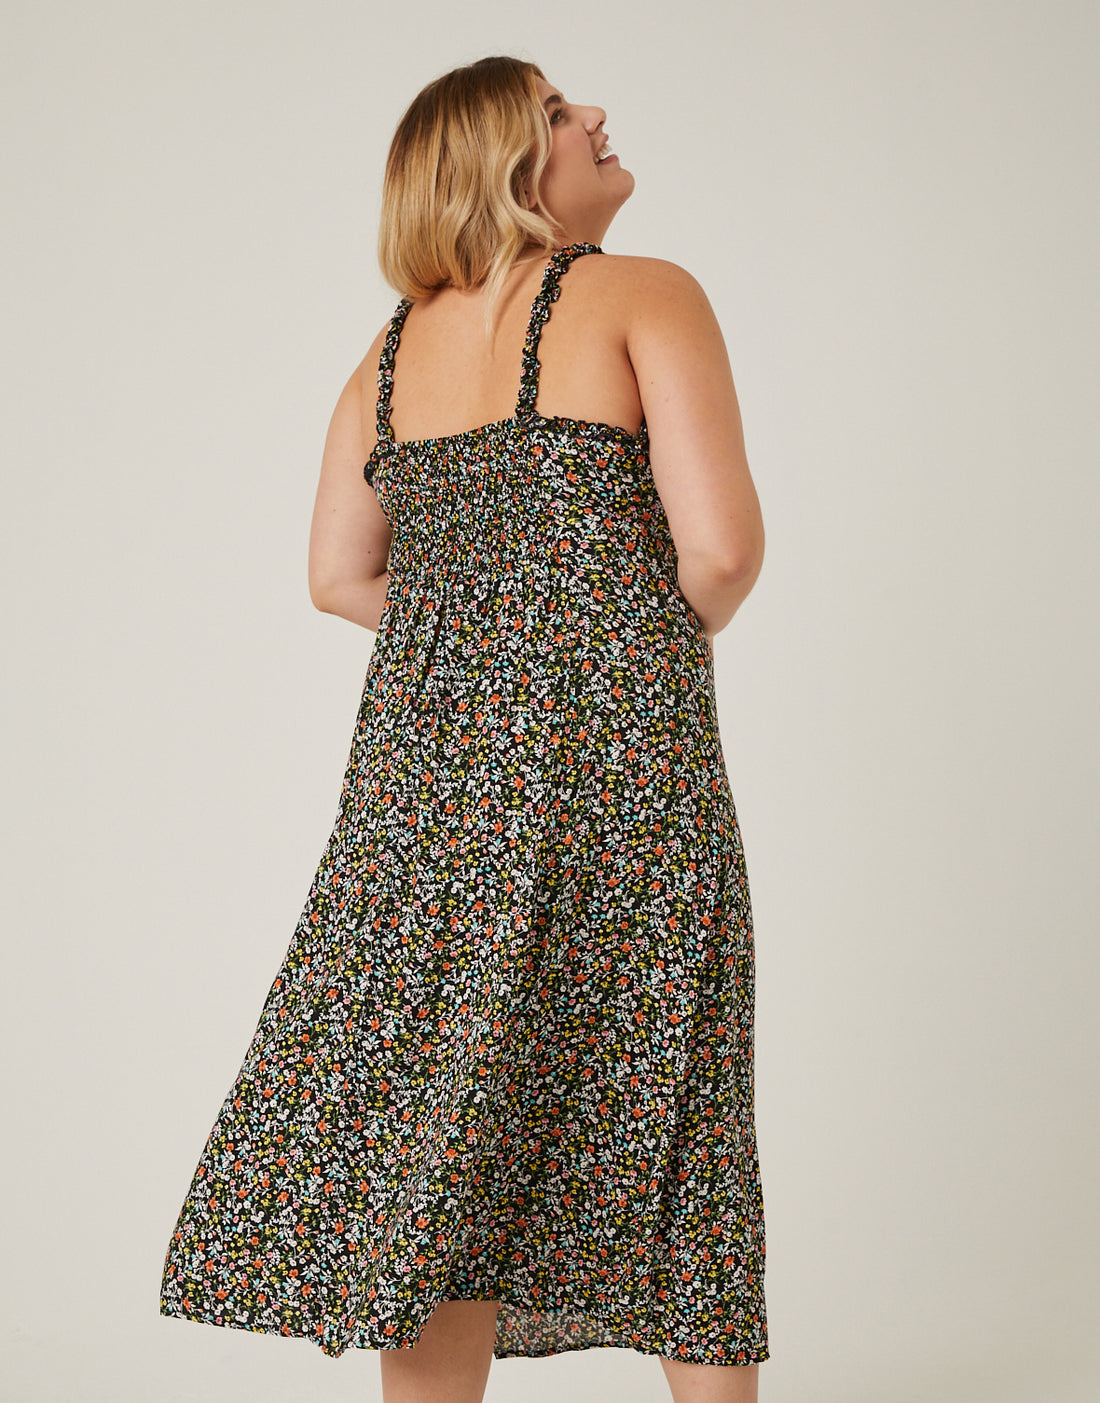 Curve Ruffle Strap Floral Sundress Plus Size Dresses -2020AVE